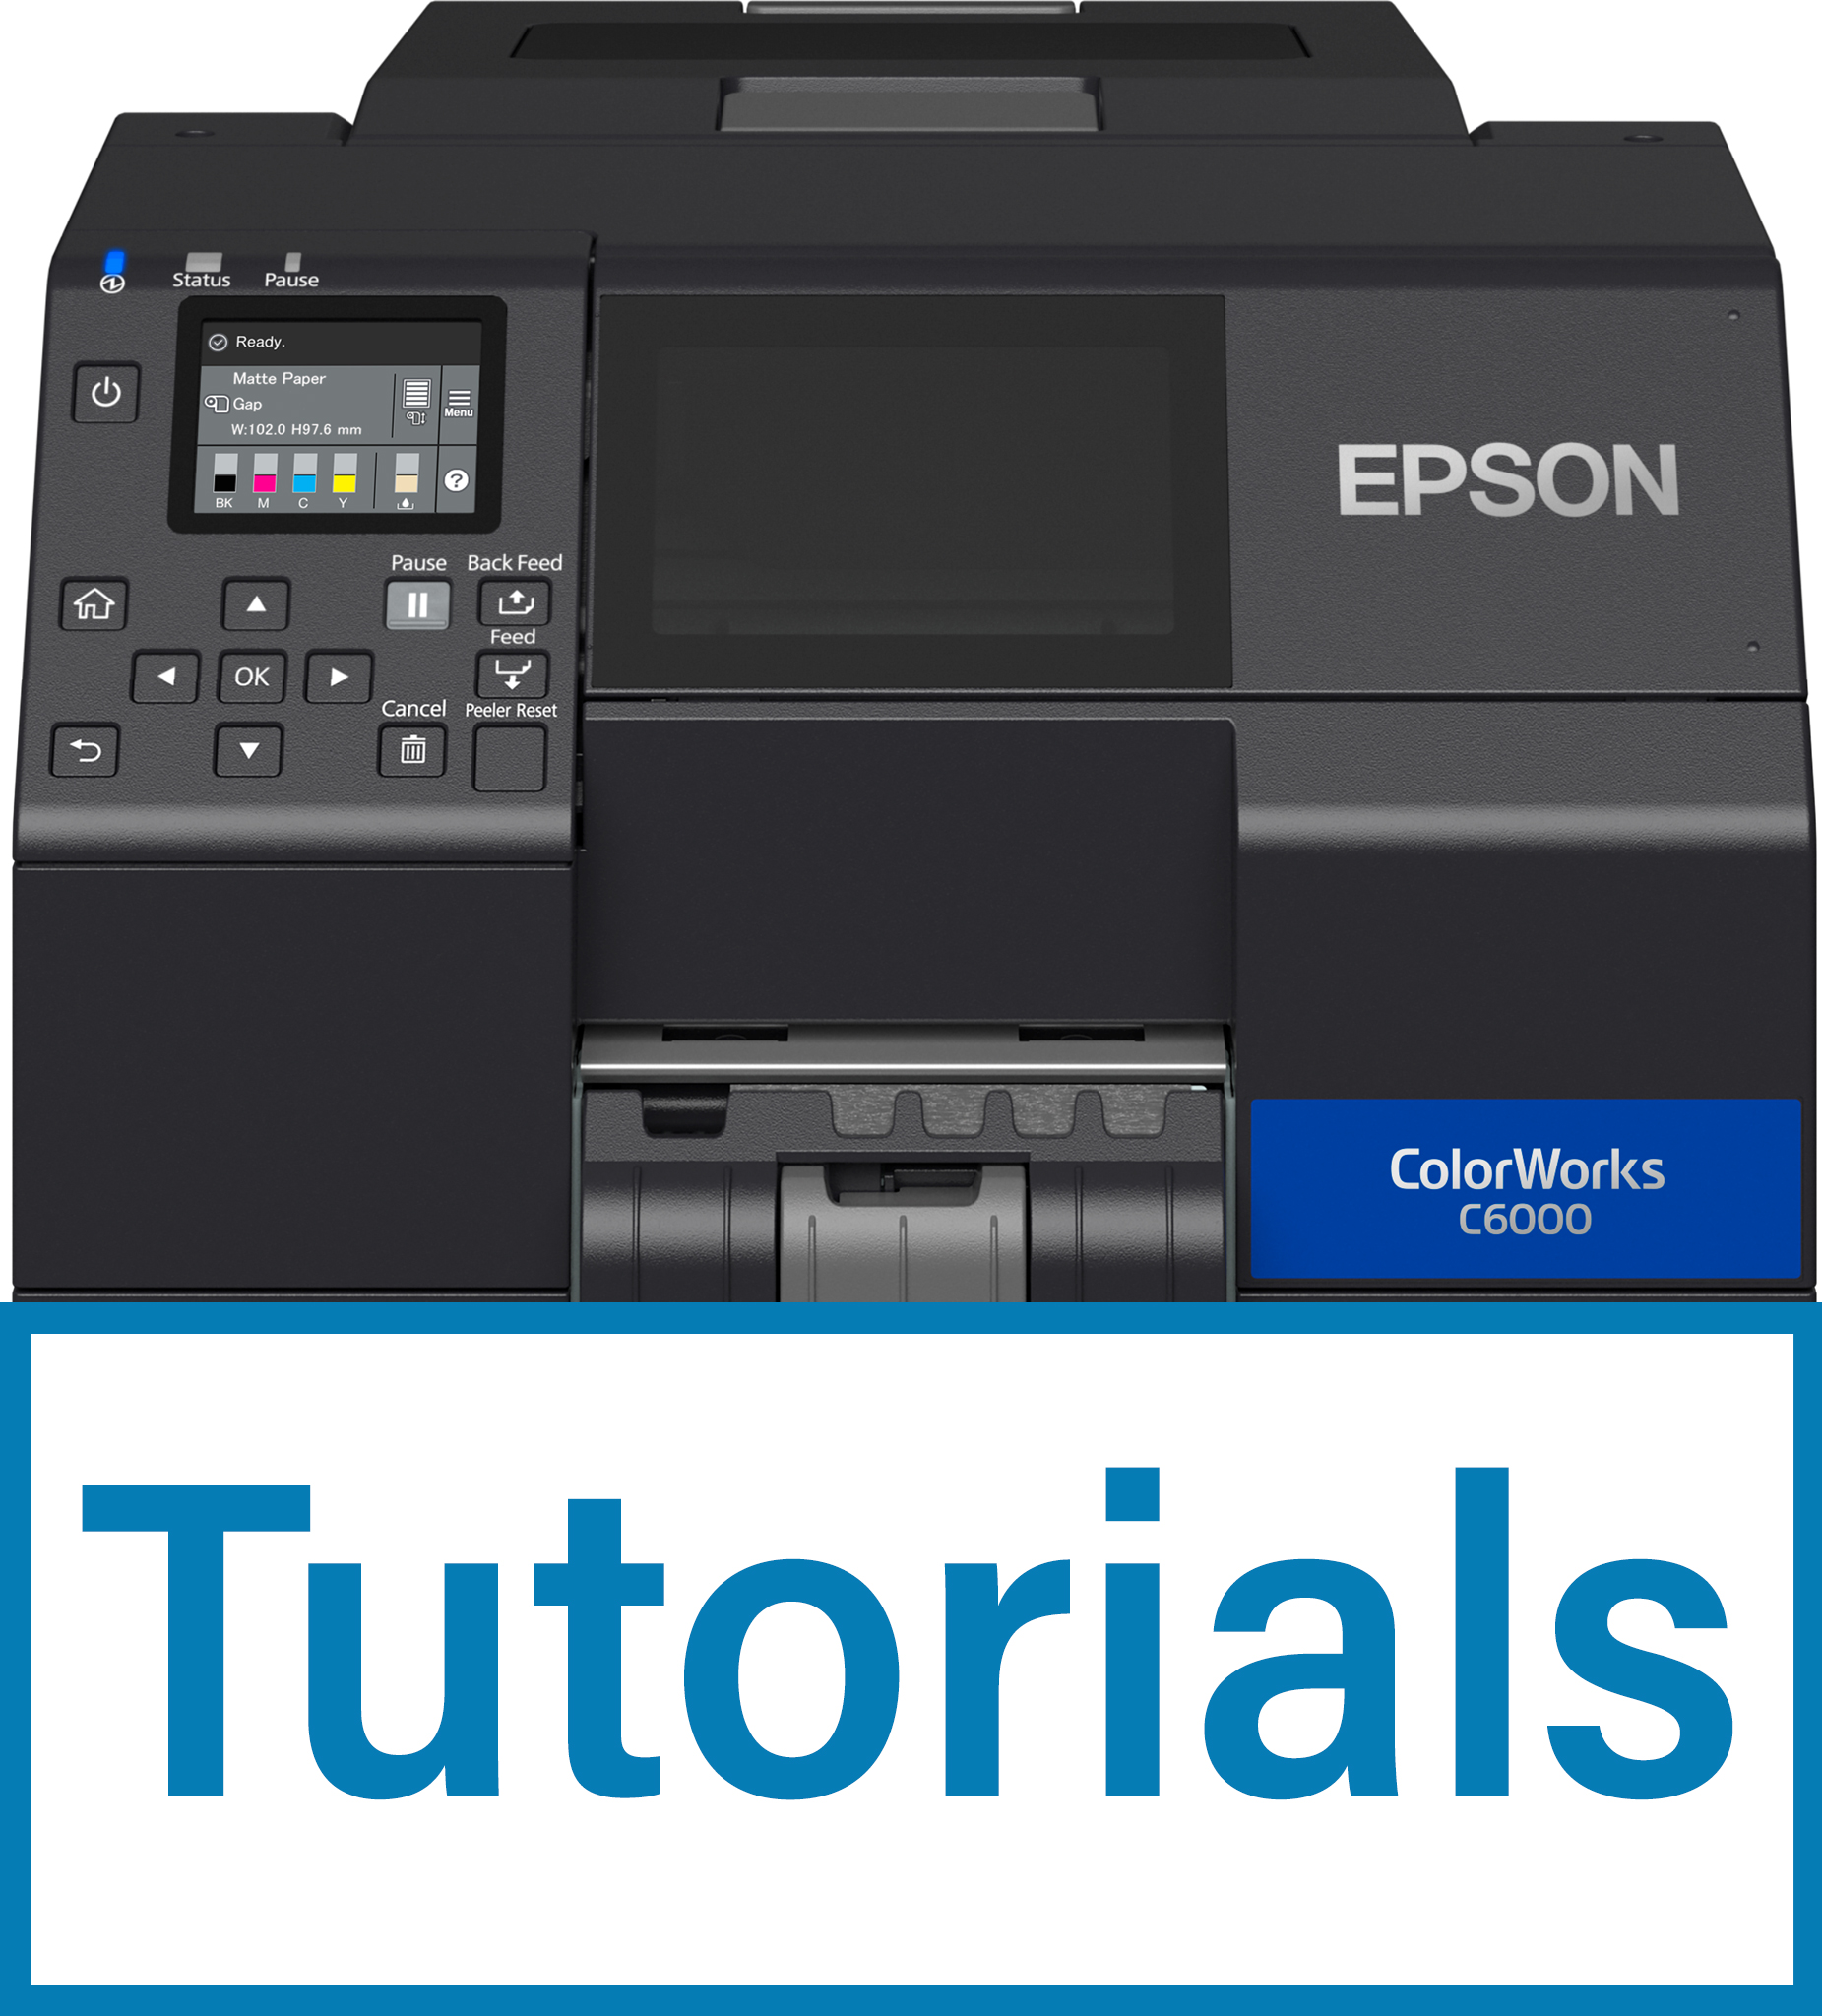 Kép a EPSON ColorWorks C6000/C6500 kategóriához